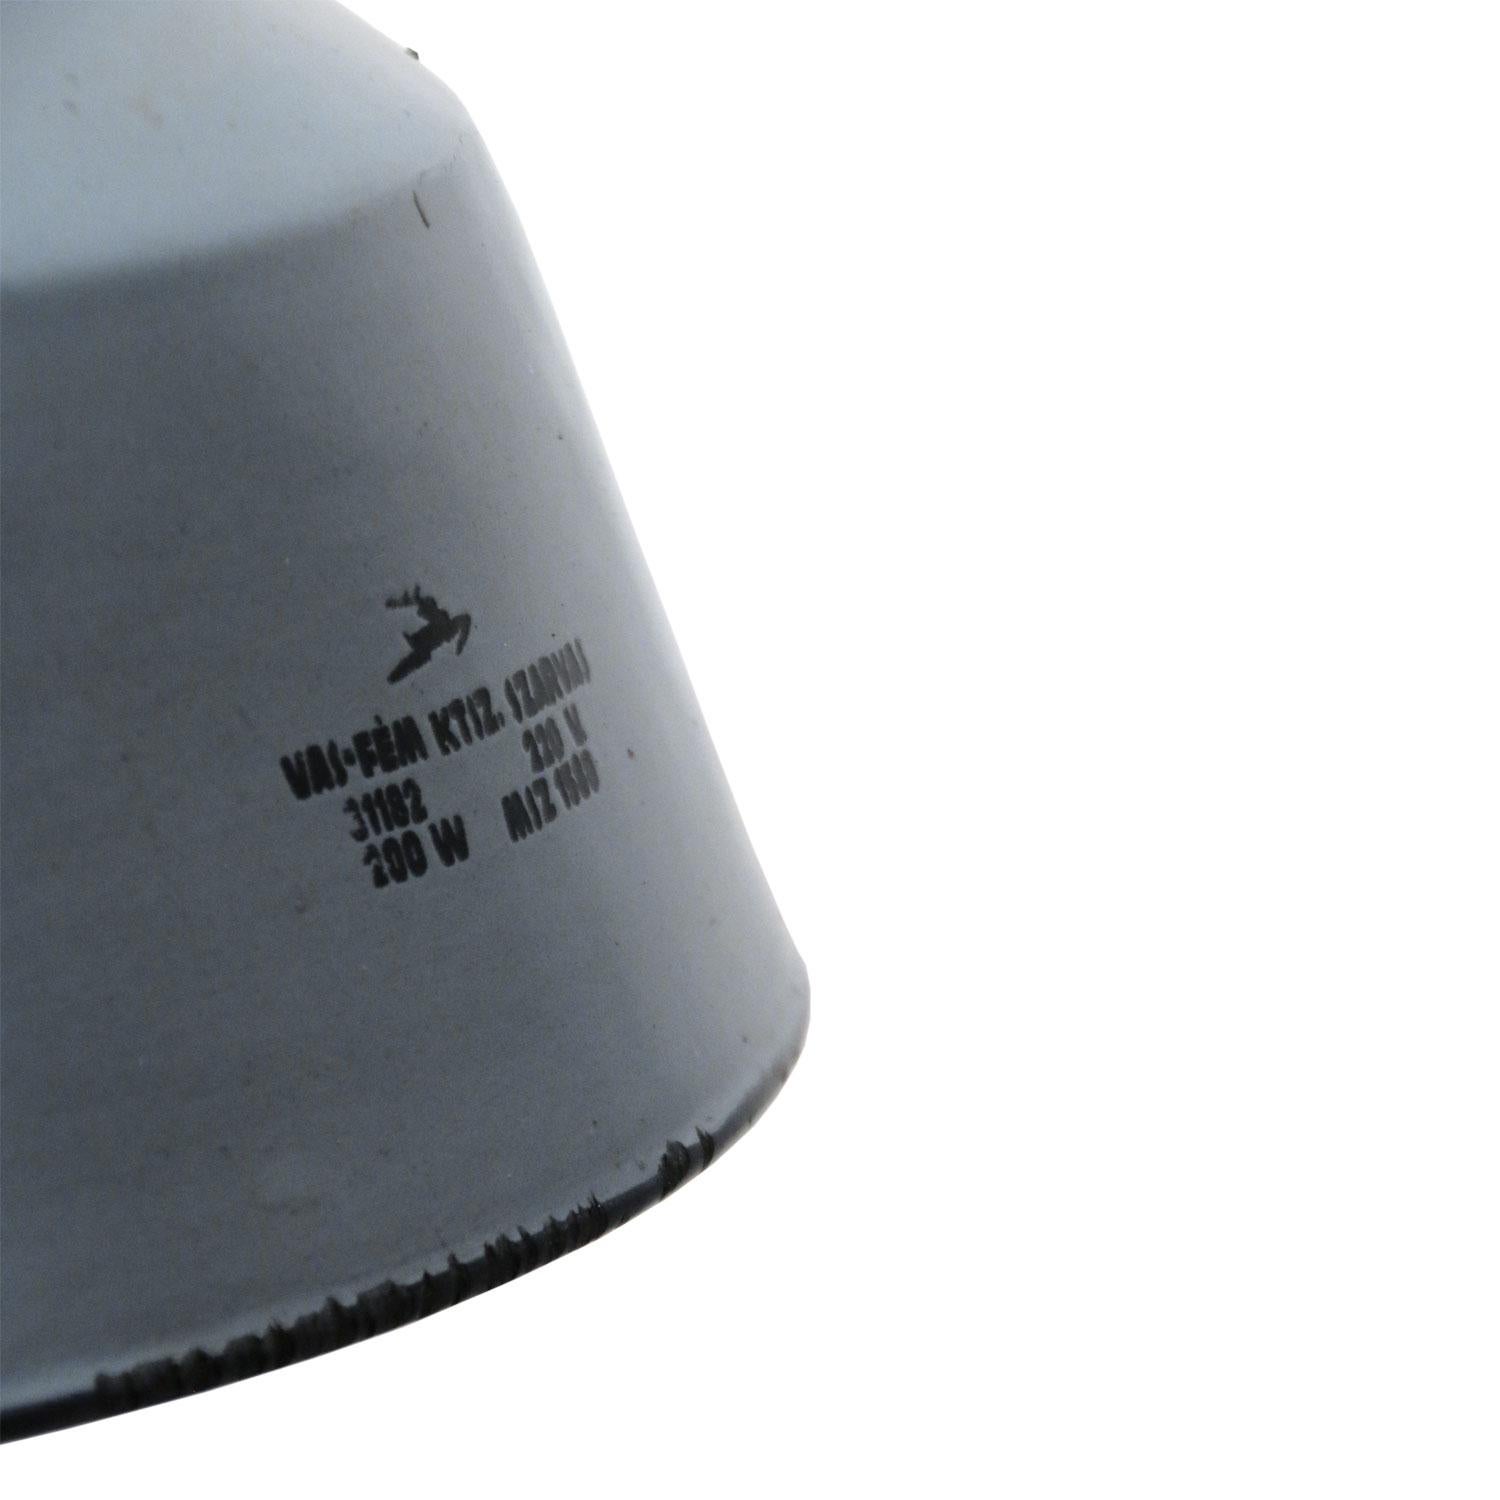 Fabrik-Hängelampe
Graue Emaille weiß innen
Platte aus Gusseisen

Gewicht 5,0 kg / 11 lb

Der Preis gilt für jeden einzelnen Artikel. Alle Lampen sind nach internationalen Normen für Glühbirnen, energieeffiziente und LED-Lampen geeignet.